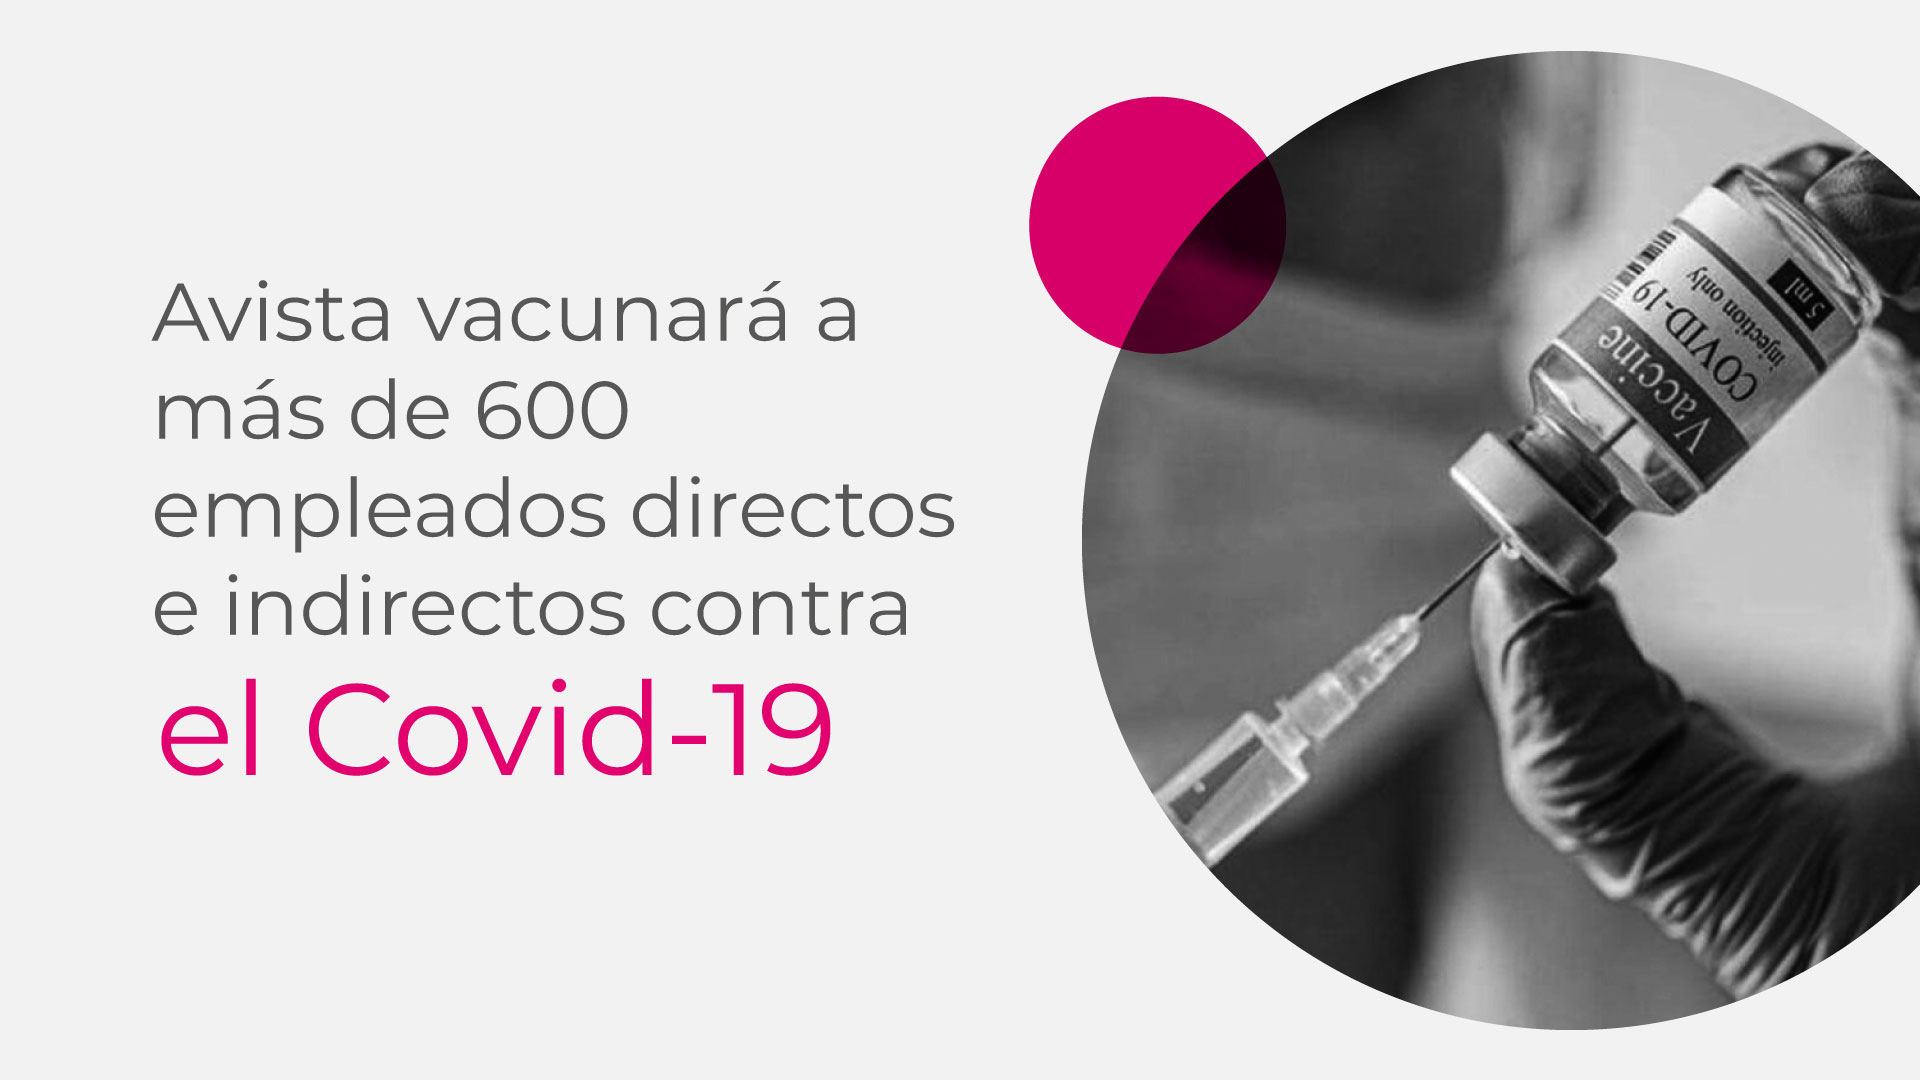 Avista vacunará a más de 600 empleados directos e indirectos contra el Covid-19